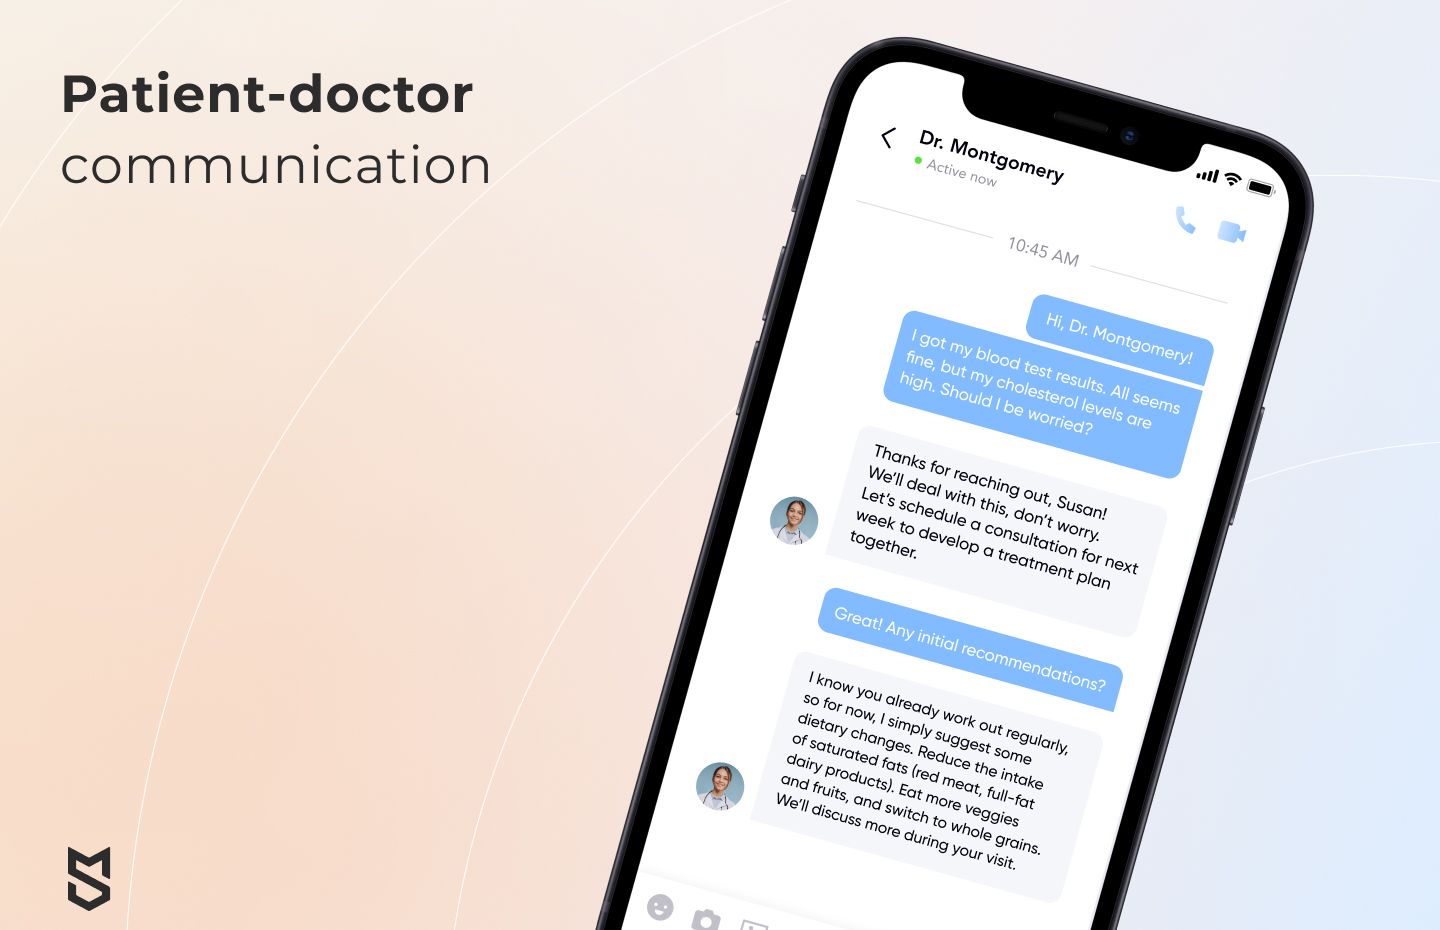 Patient-doctor communication